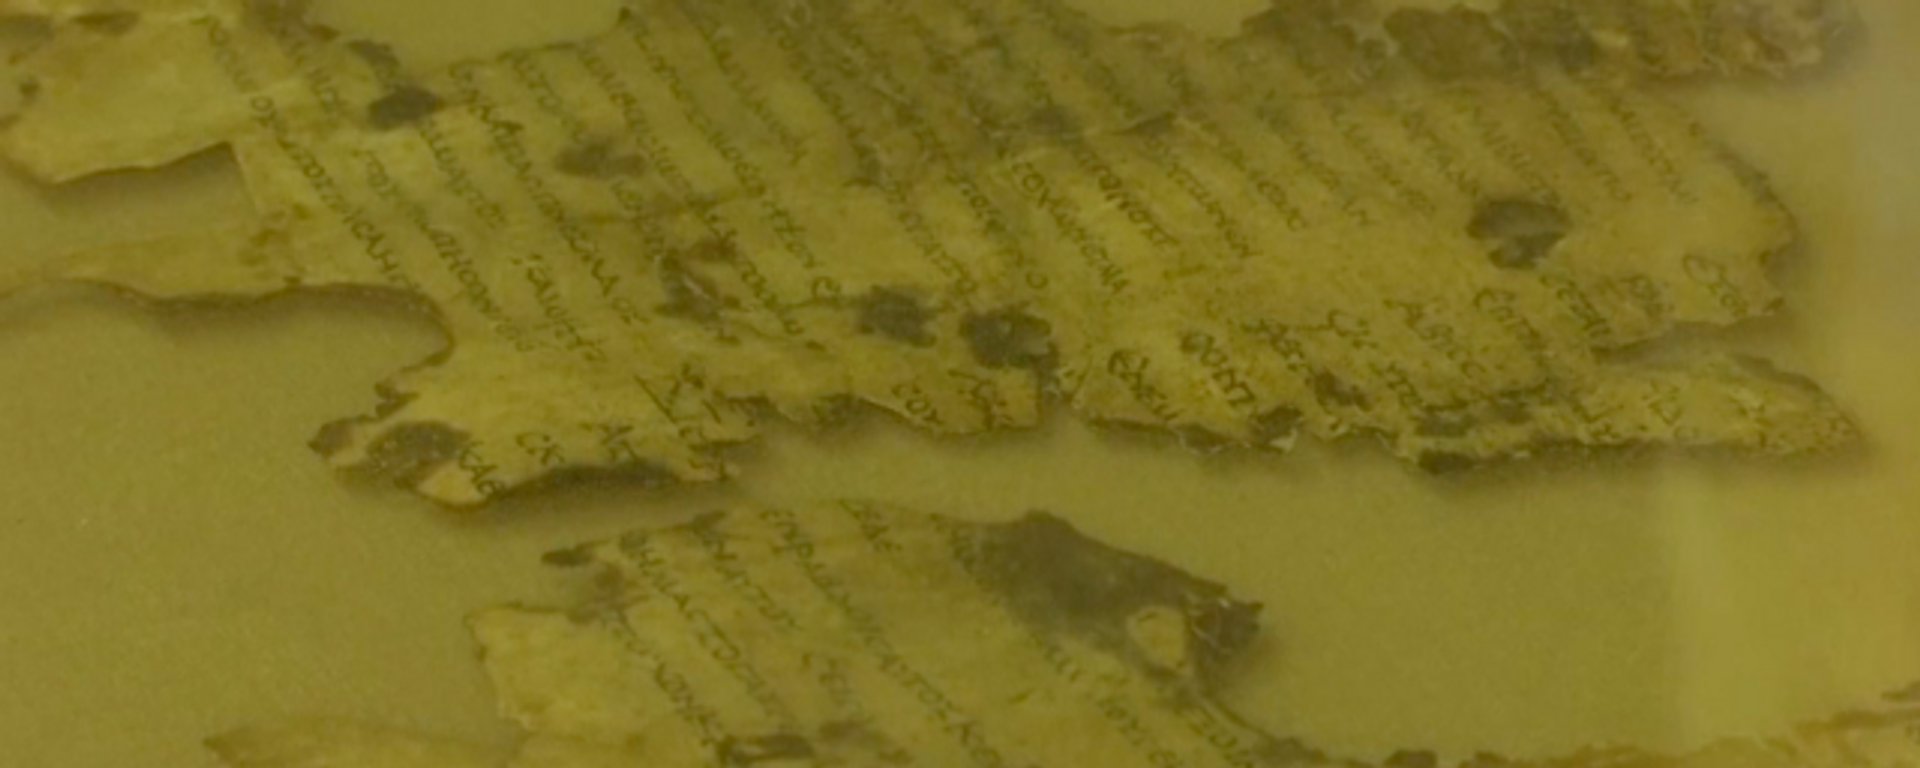 Encuentran fragmentos de los Manuscritos del Mar Muerto en Israel - Sputnik Mundo, 1920, 16.03.2021